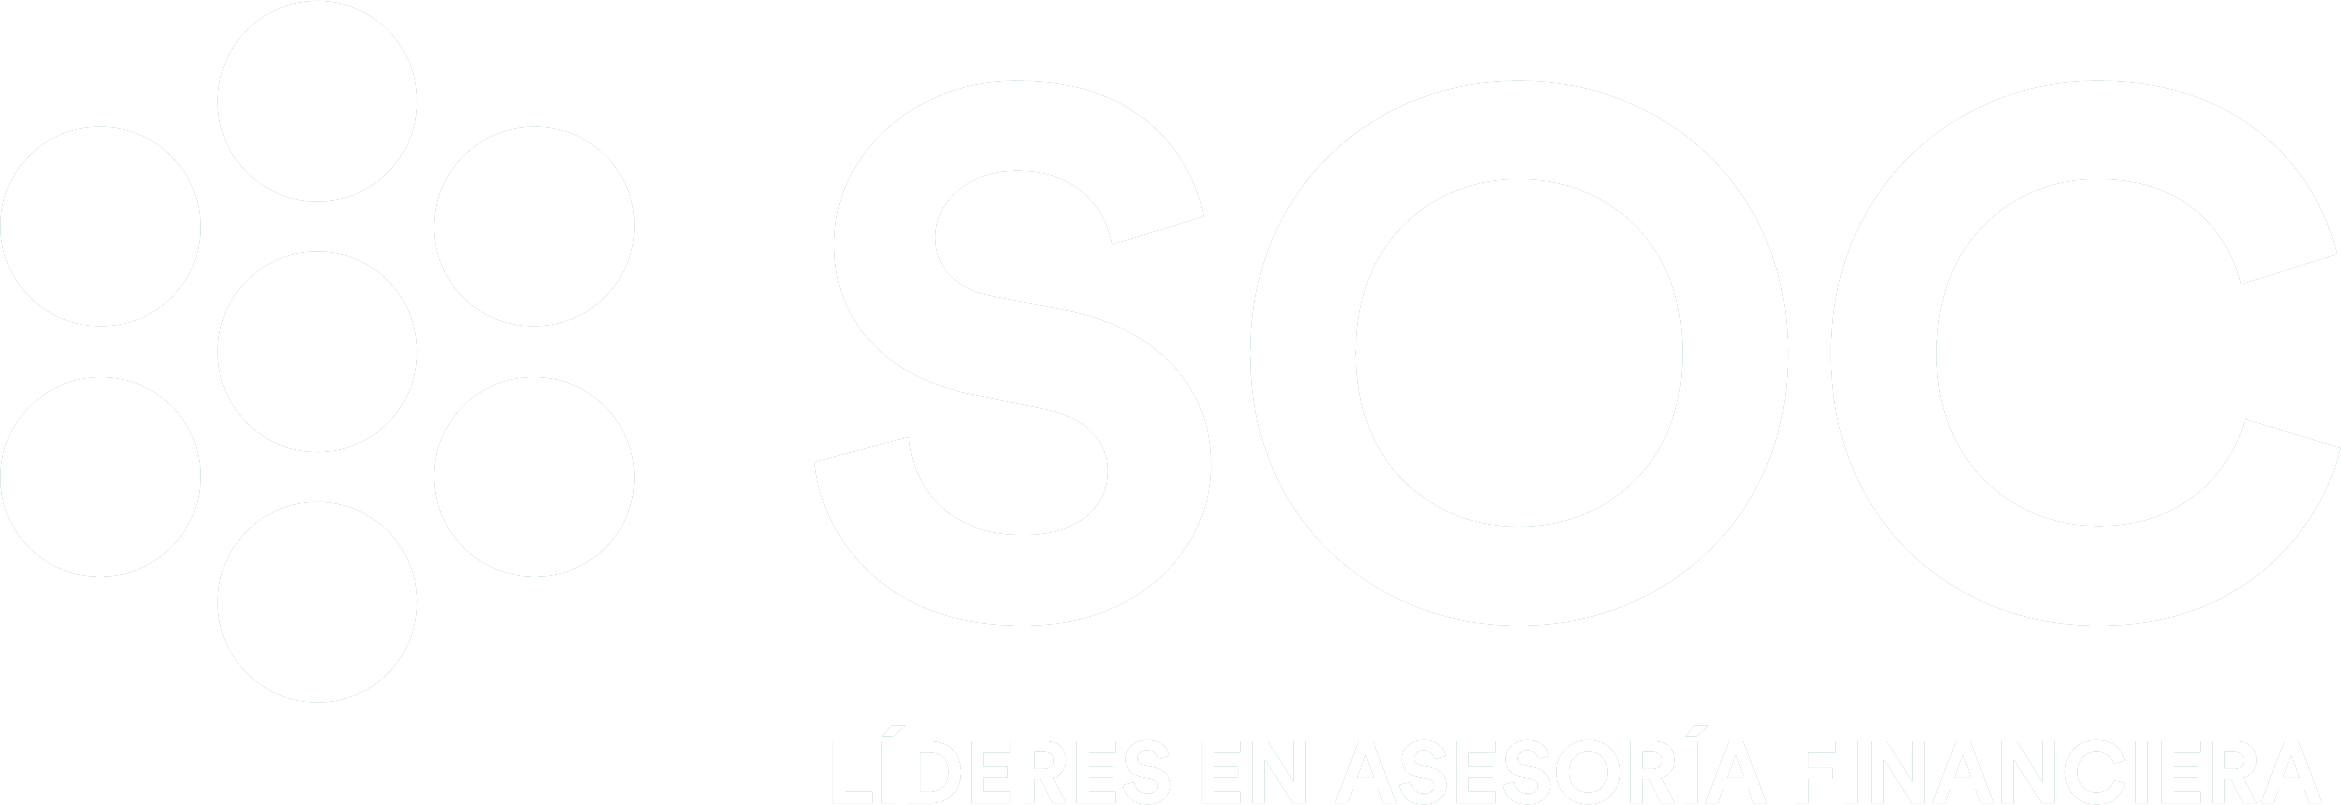 Logotipo SOC Líderes en Asesoría Financiera